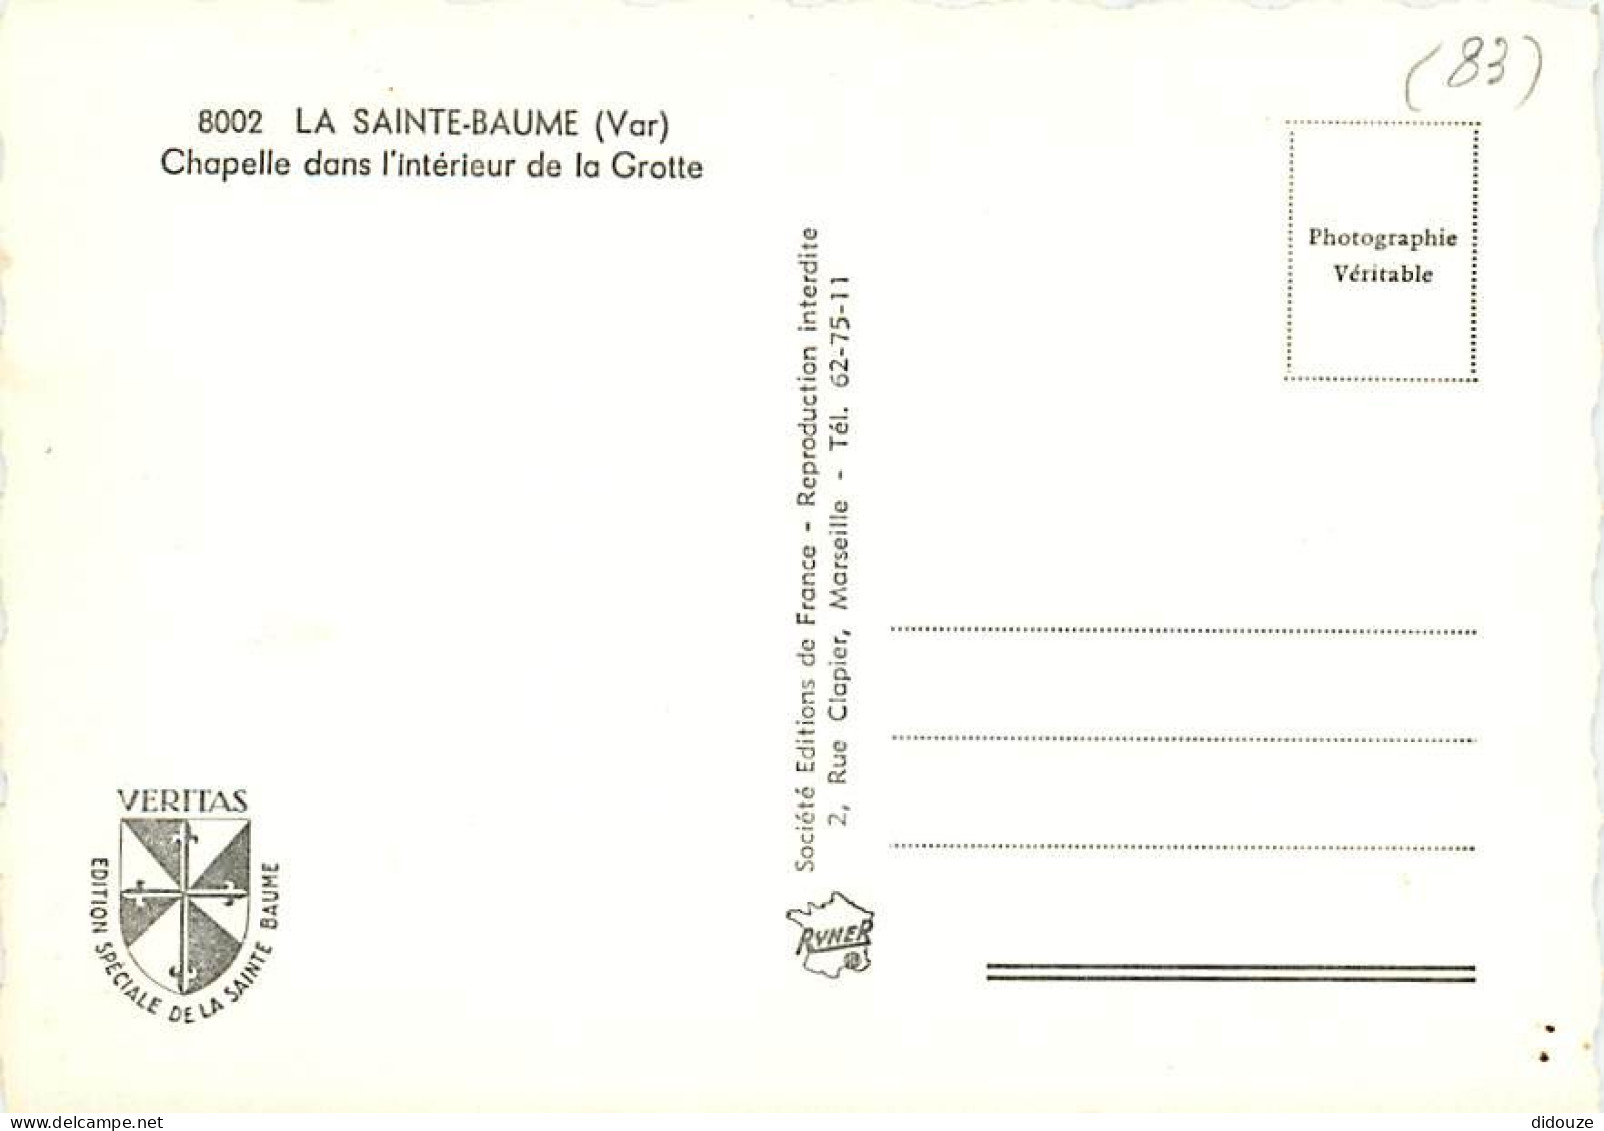 83 - La Sainte Baume - Chapelle Dans L'intérieur De La Grotte - Mention Photographie Véritable - CPSM Grand Format - Car - Saint-Maximin-la-Sainte-Baume